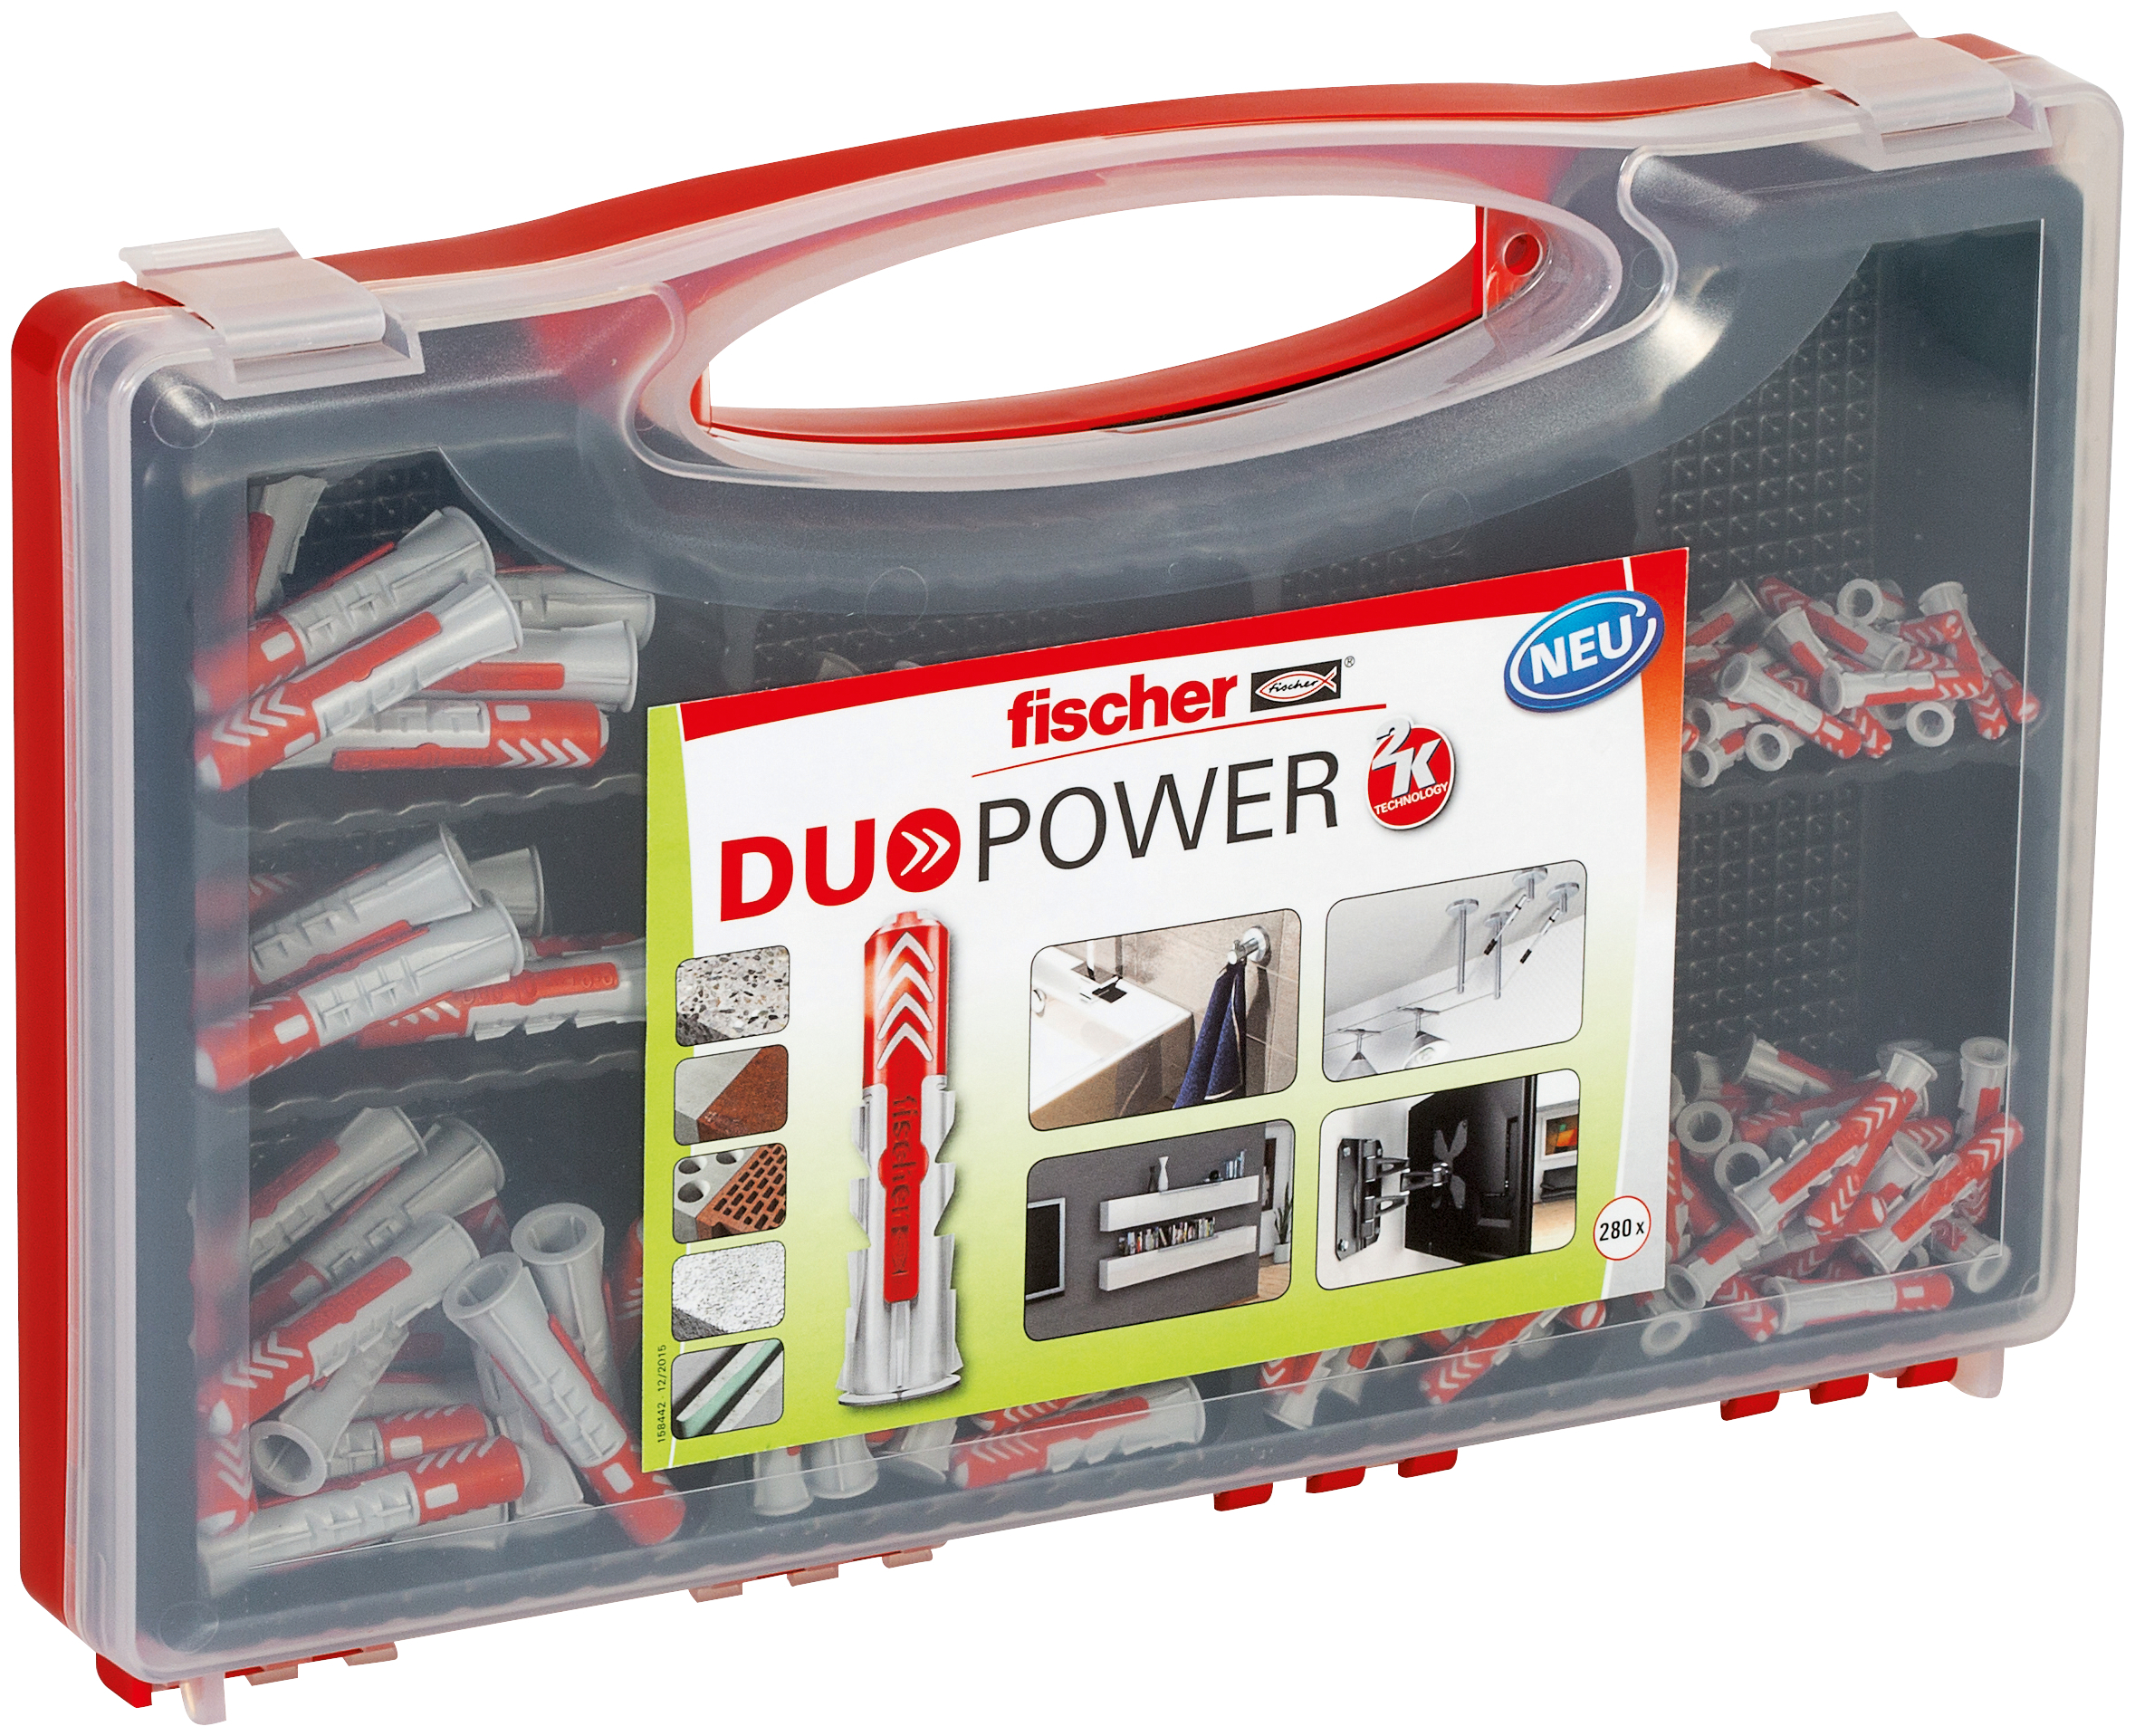 fischer Valigetta REDBOX DuoPower 280 tasselli (280 Pz.) Tasselli assortiti in una pratica valigetta rossa con un ottimo rapporto prezzo / prestazioni.